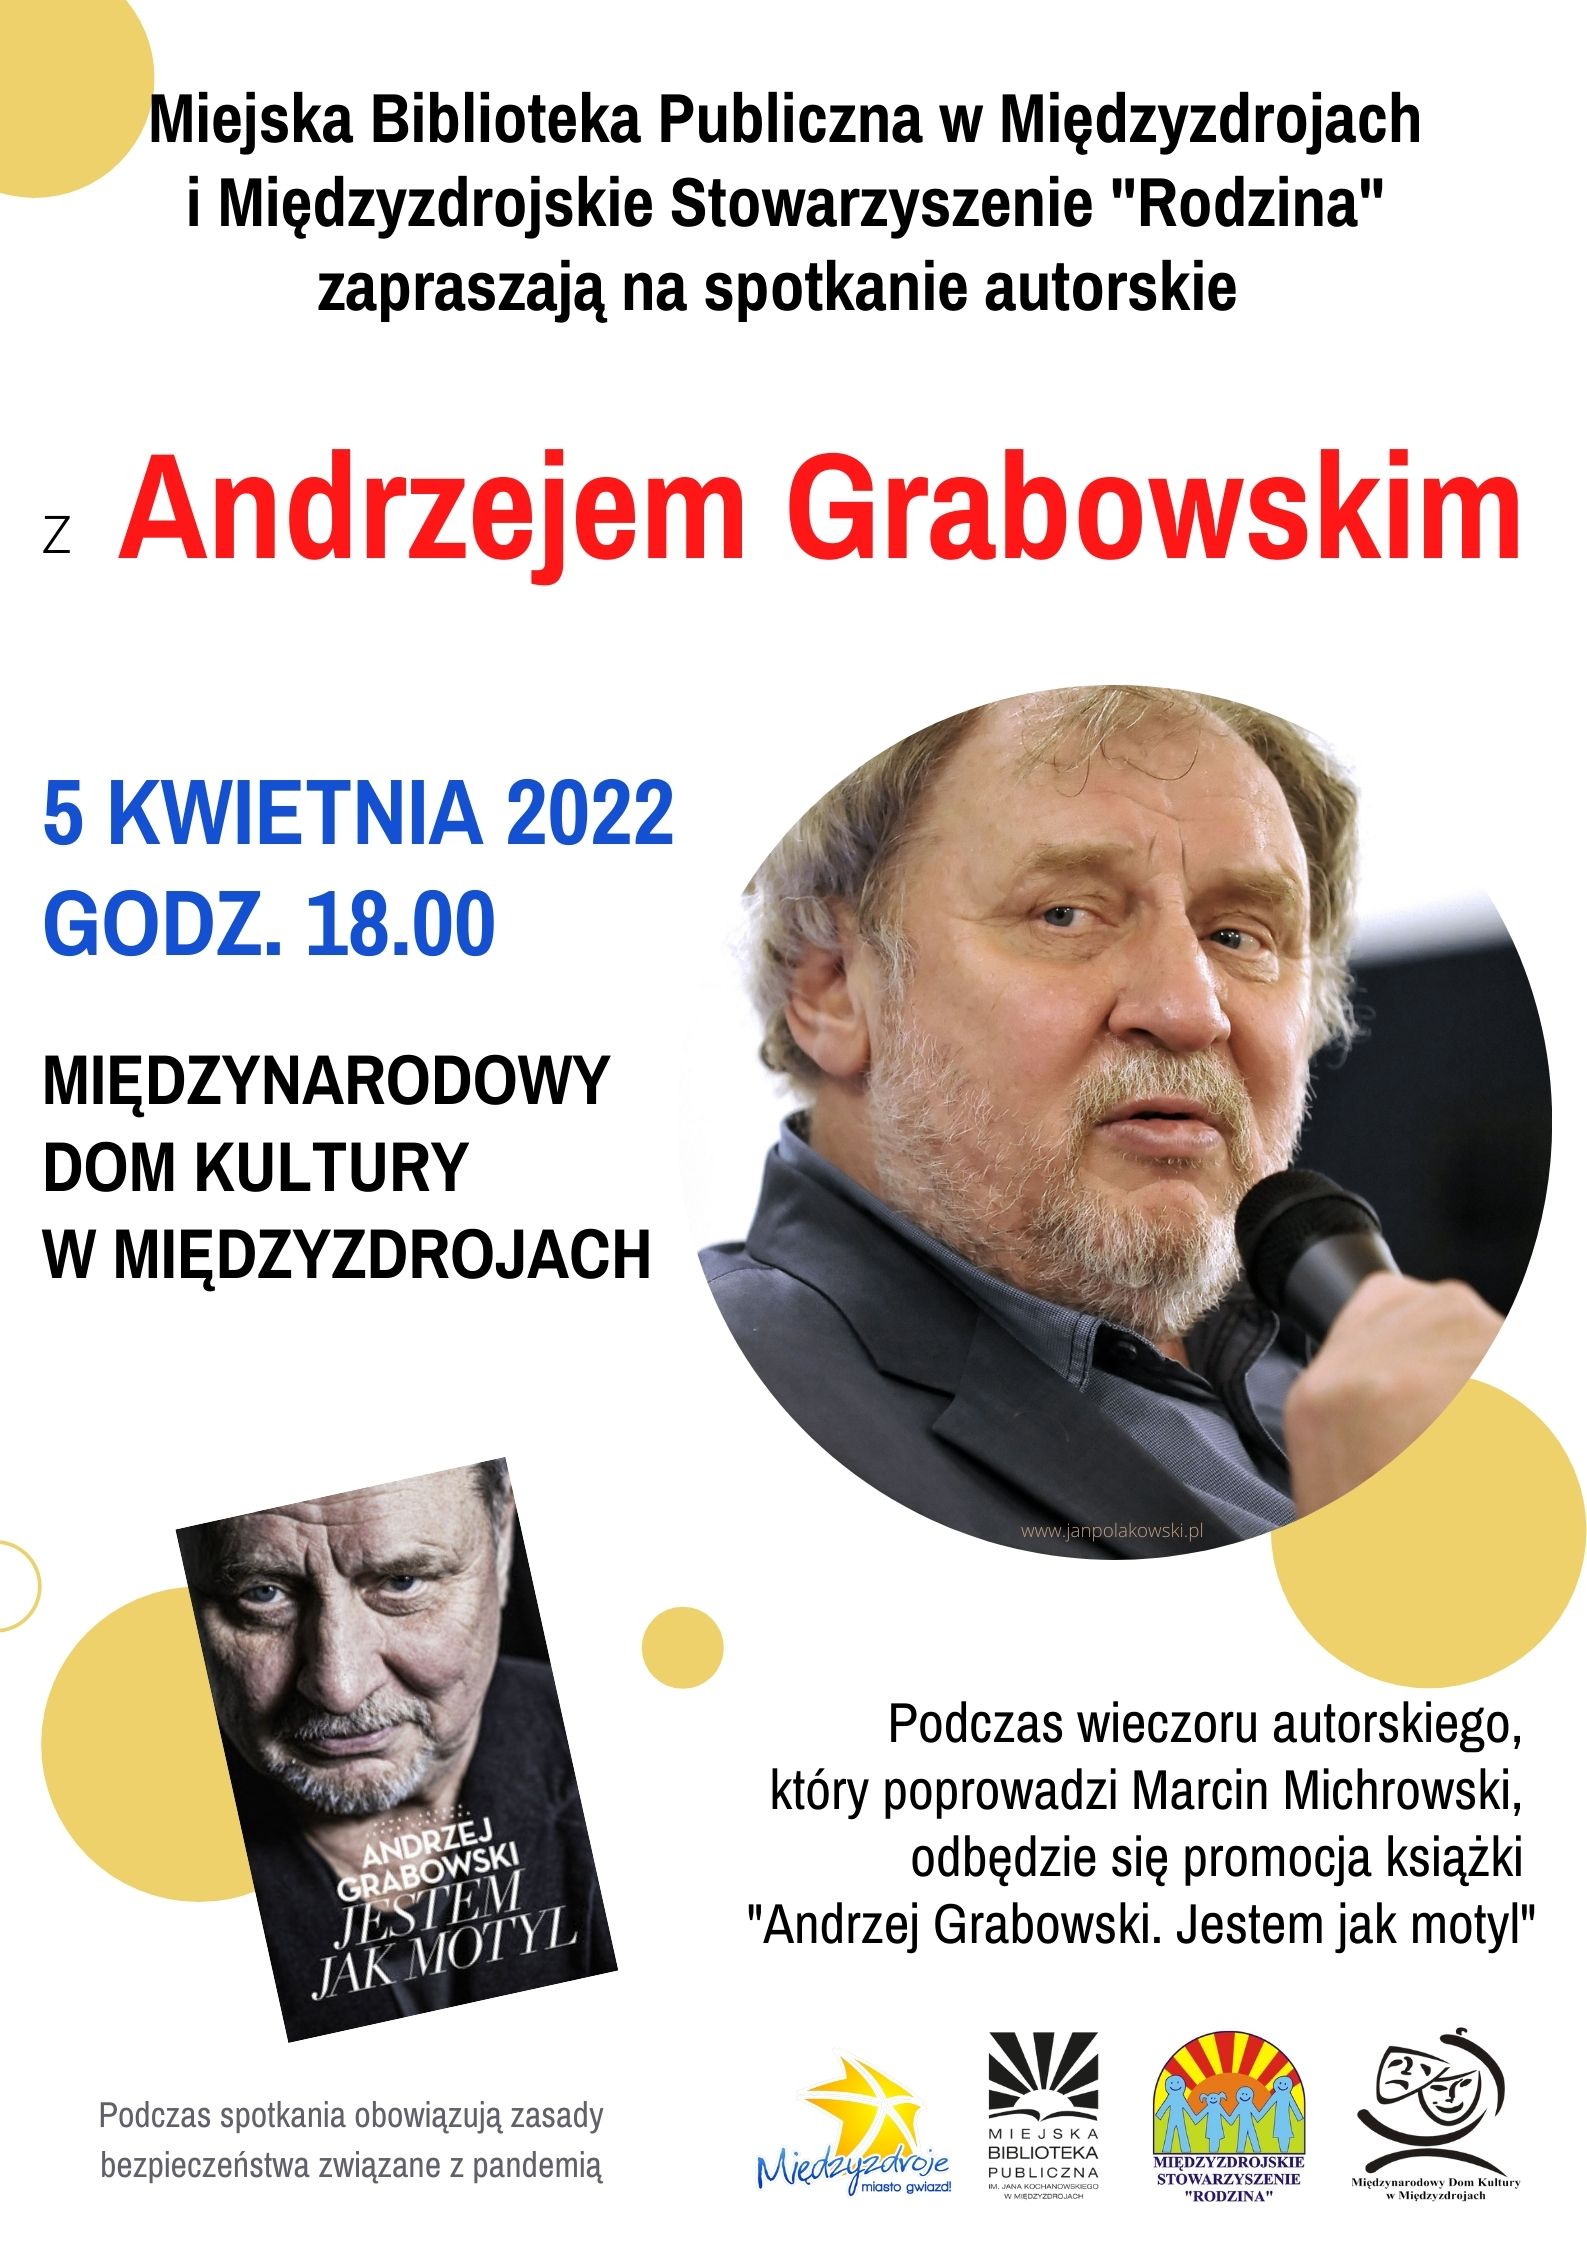 „Jestem jak motyl” – Andrzej Grabowski w Międzyzdrojach 5 kwietnia 2022 r. - zapowiedź